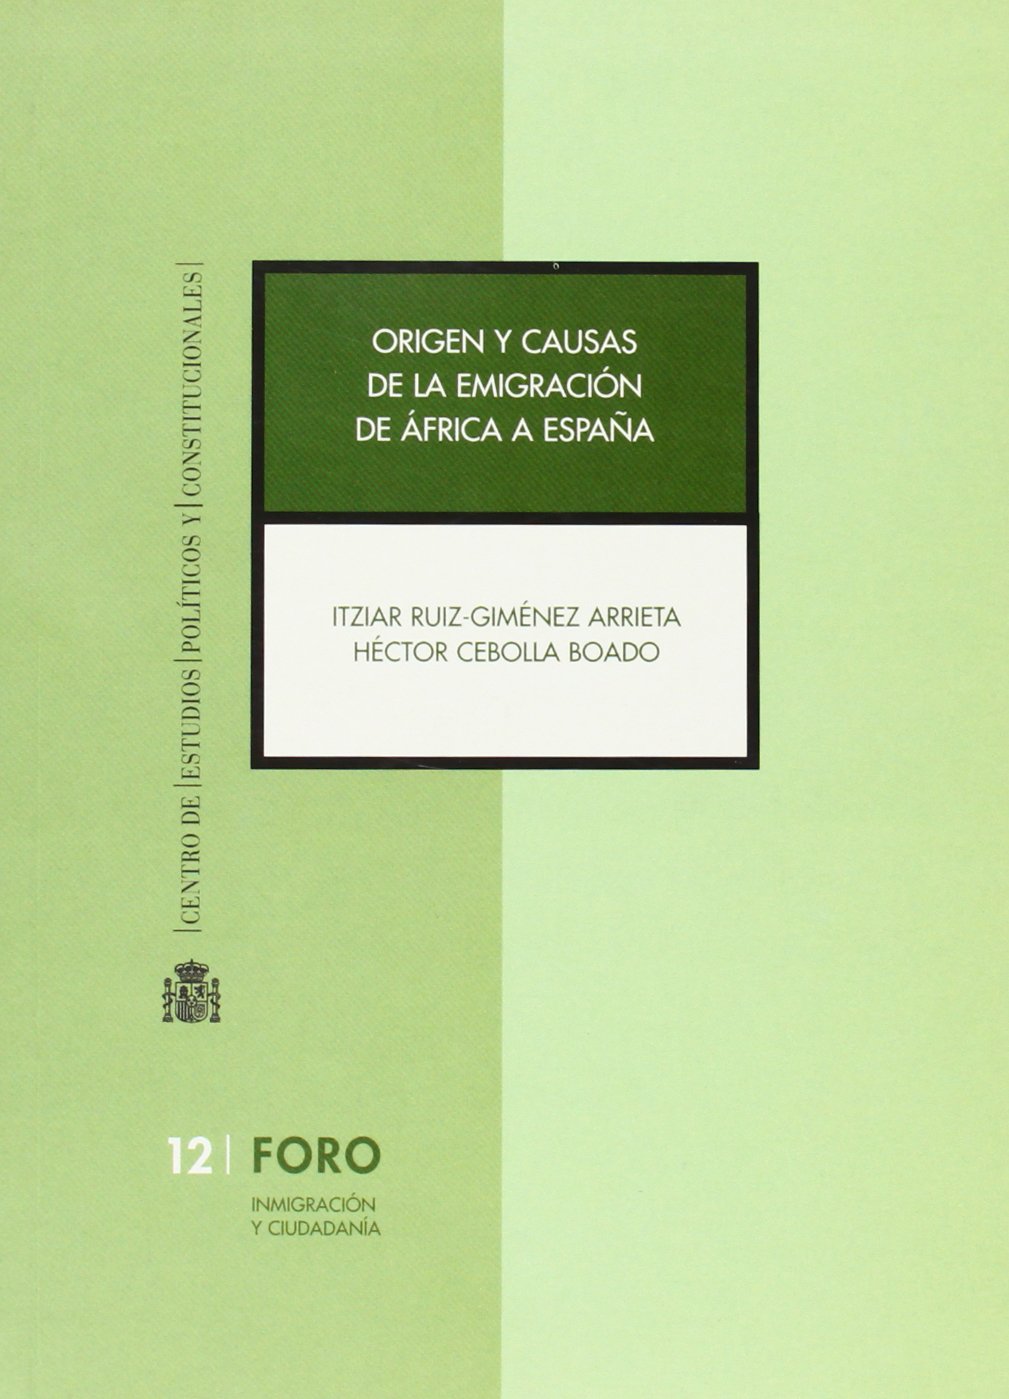 Origen y causas de la emigracion de África a España